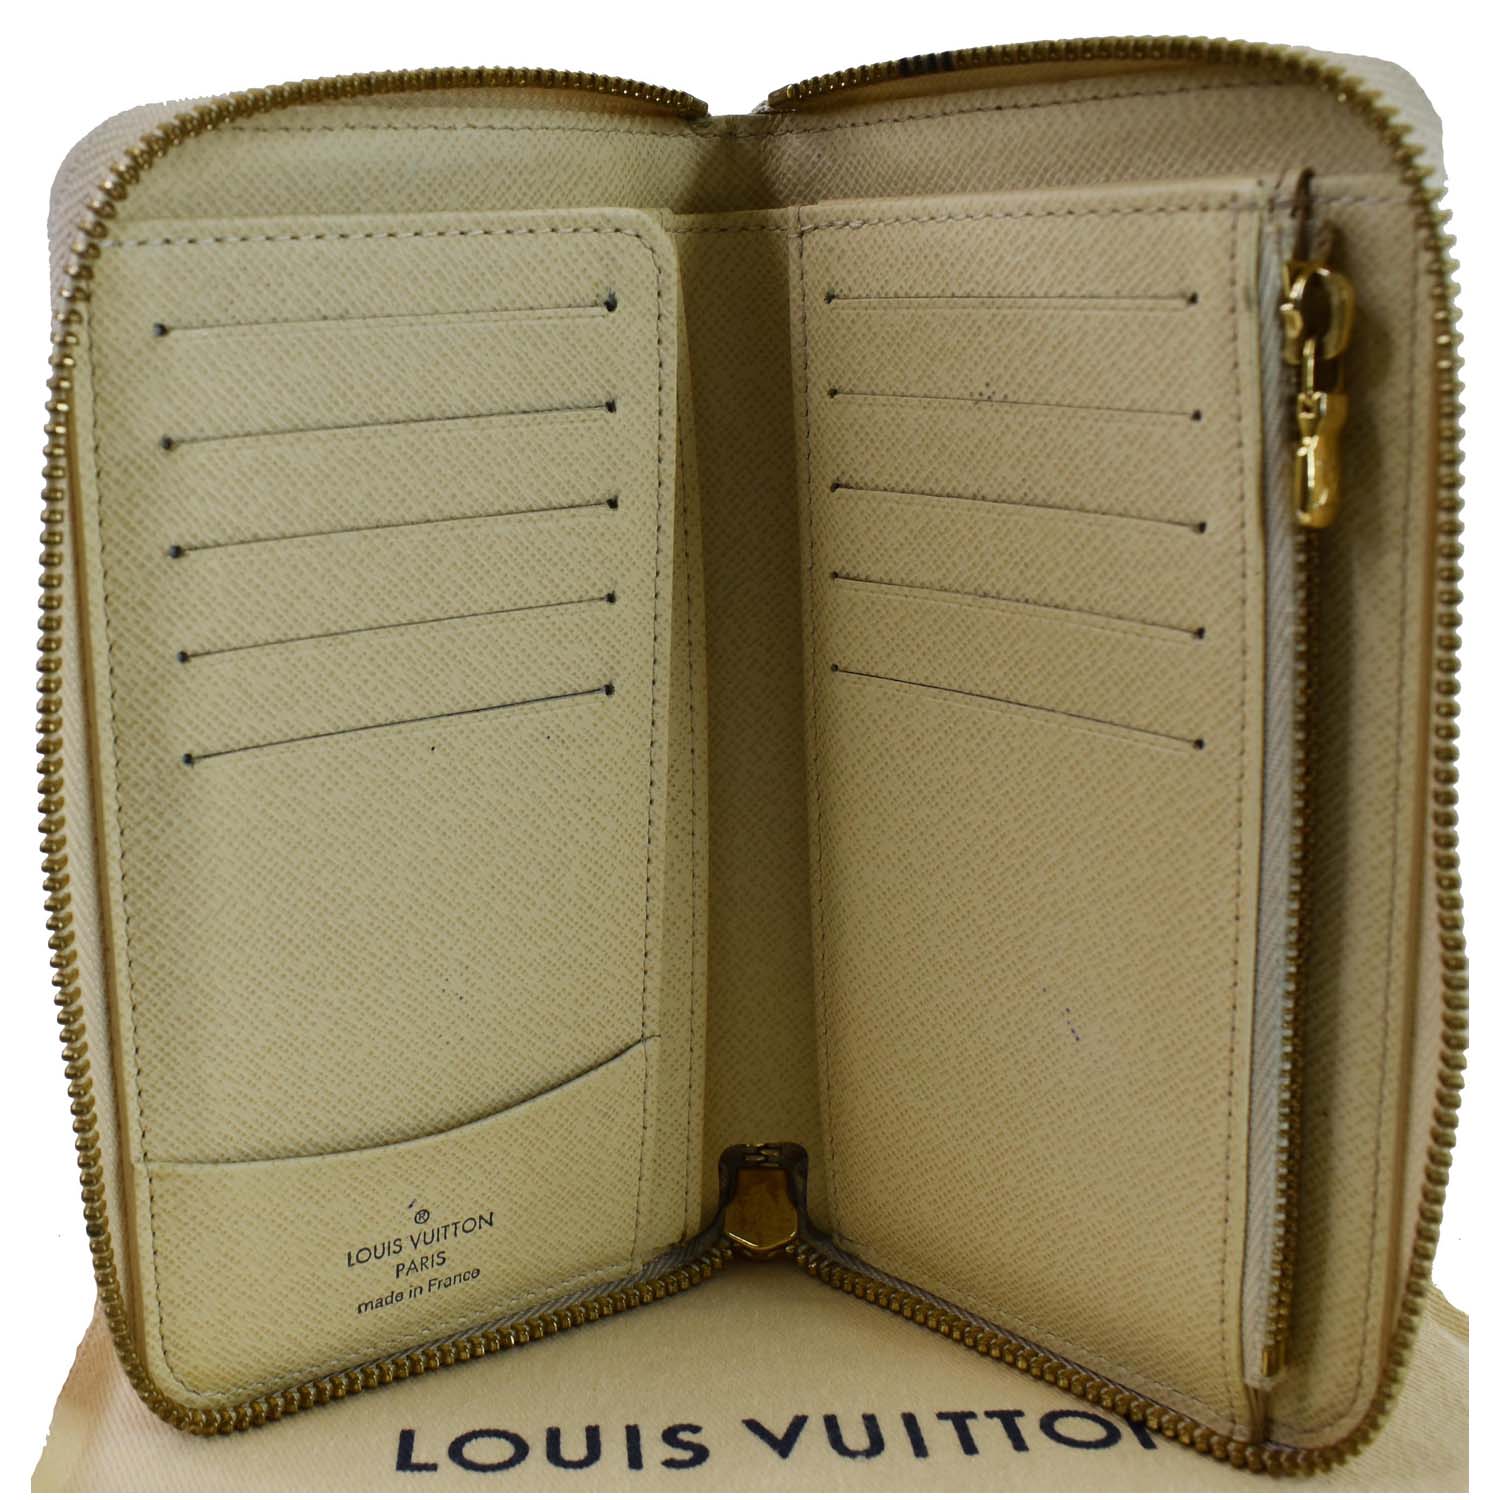 Louis Vuitton wallet‼️SOLD‼️ 4000